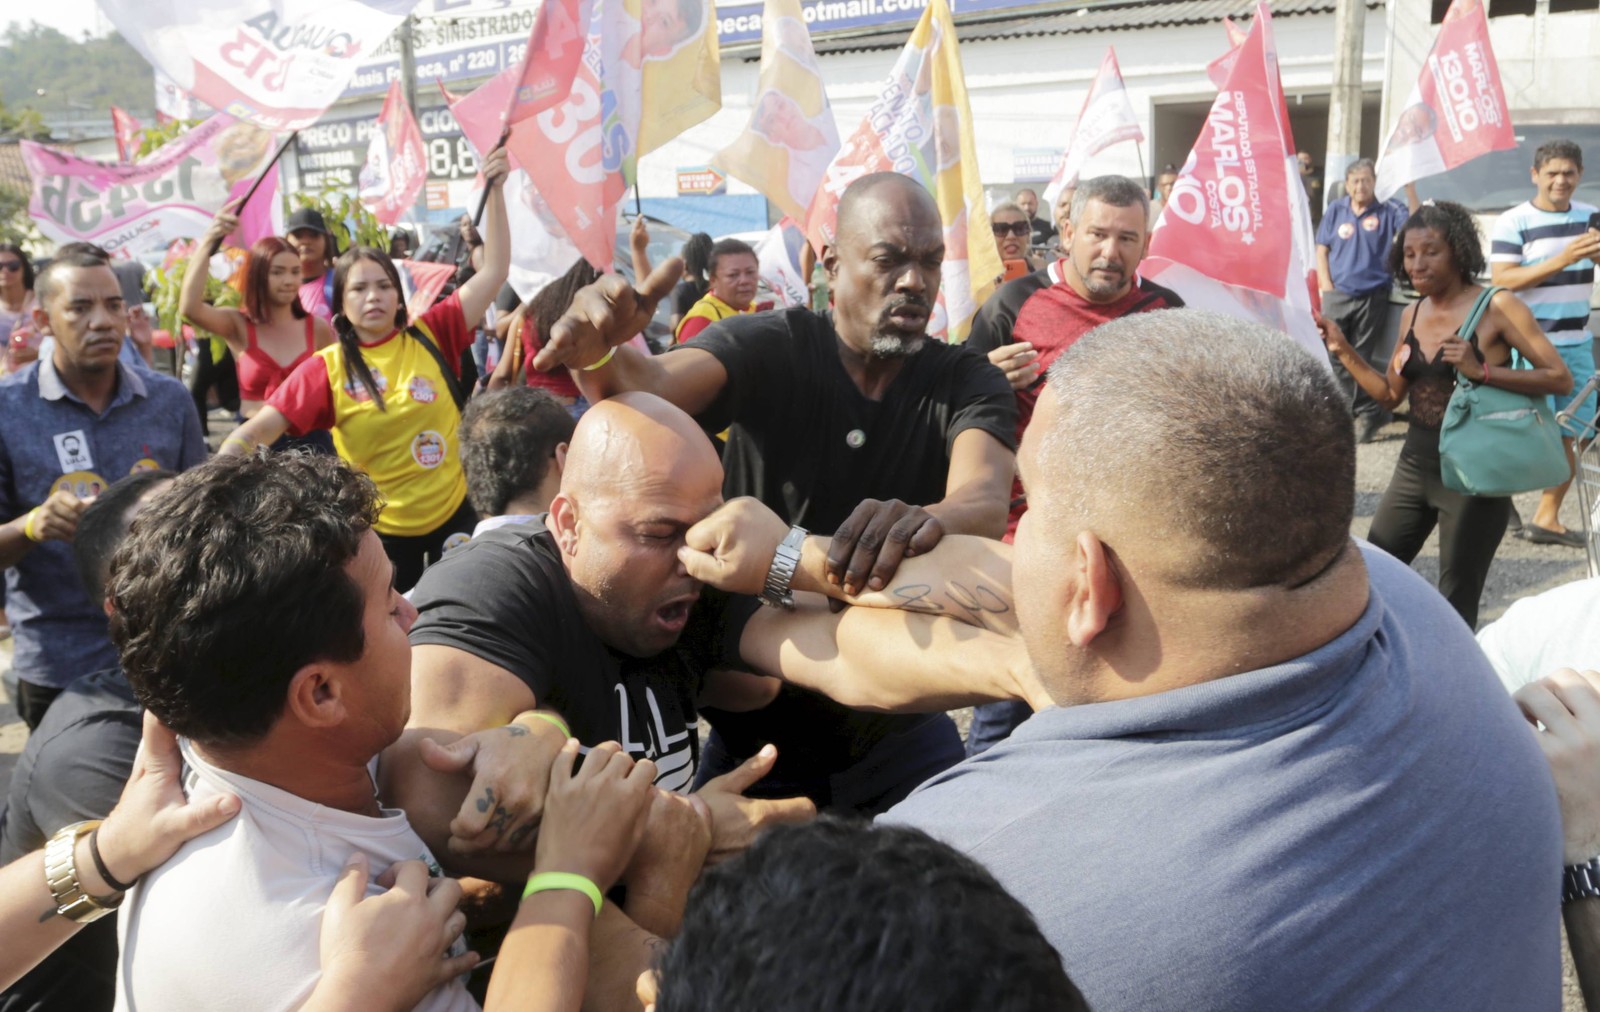 Petistas e Bolsonarista brigam na frente do Clube Tamoio, em São Gonçalo. Na foto, Rodrigo Duarte, apoiador do presidente, leva um soco durante o evento.  — Foto: Domingos Peixoto / Agência Globo